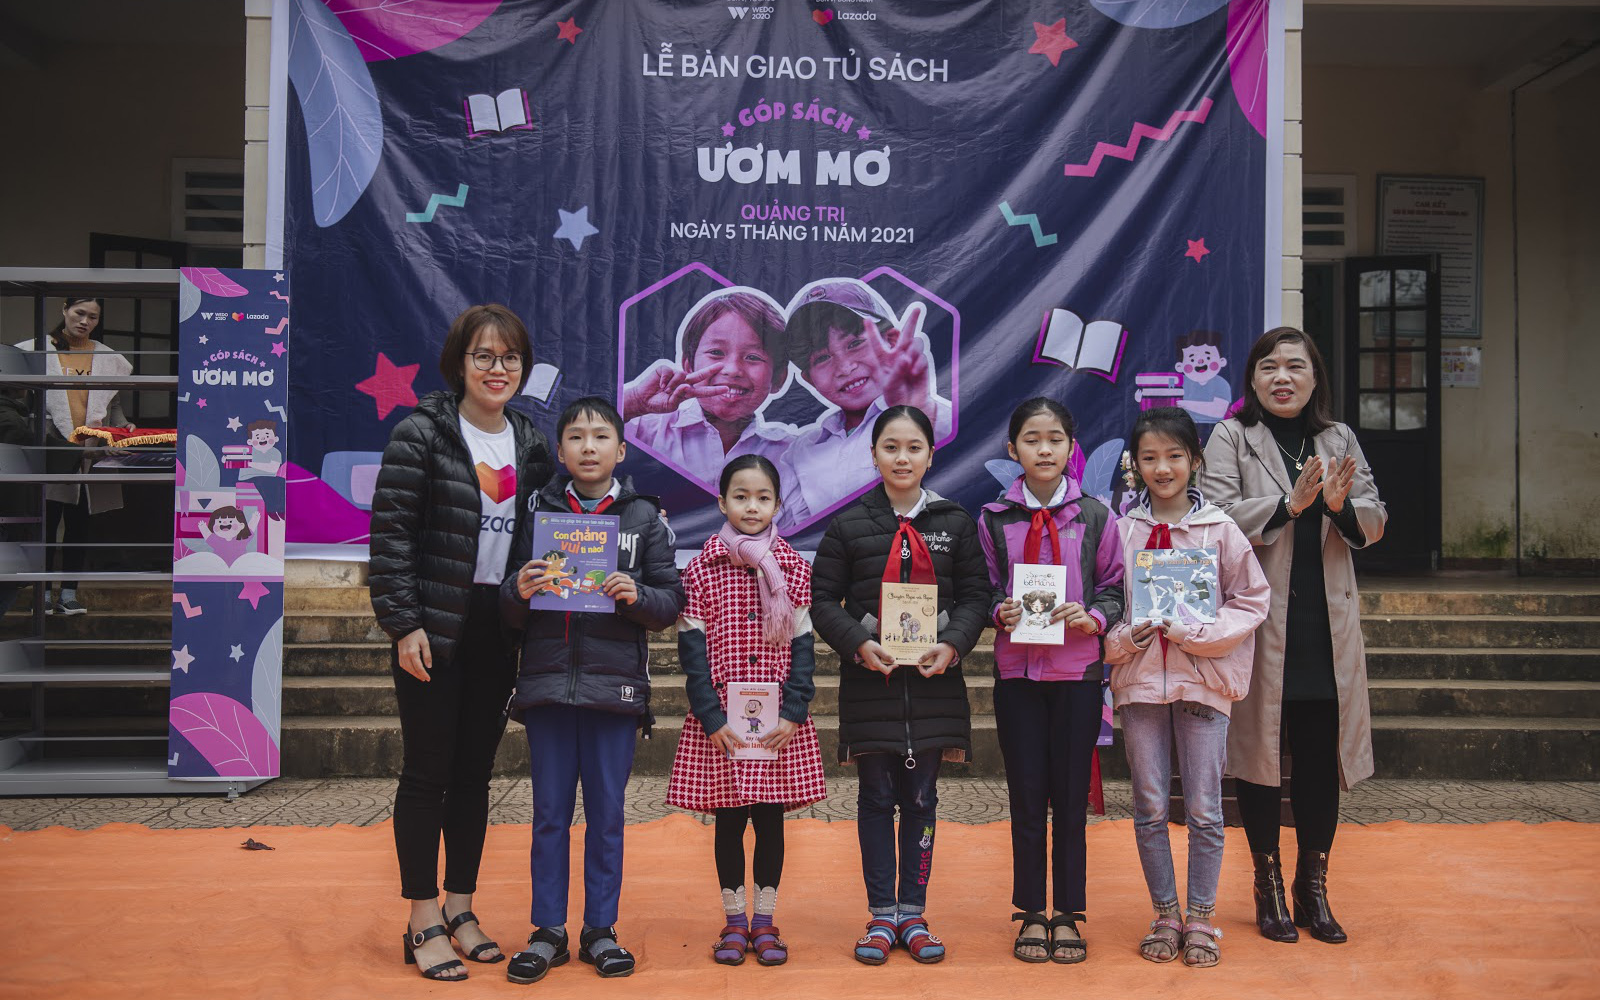 WeDo Góp Sách Ươm Mơ trao tặng hơn 20.000 cuốn sách và 10.000 bộ dụng cụ học tập cho trẻ em miền Trung